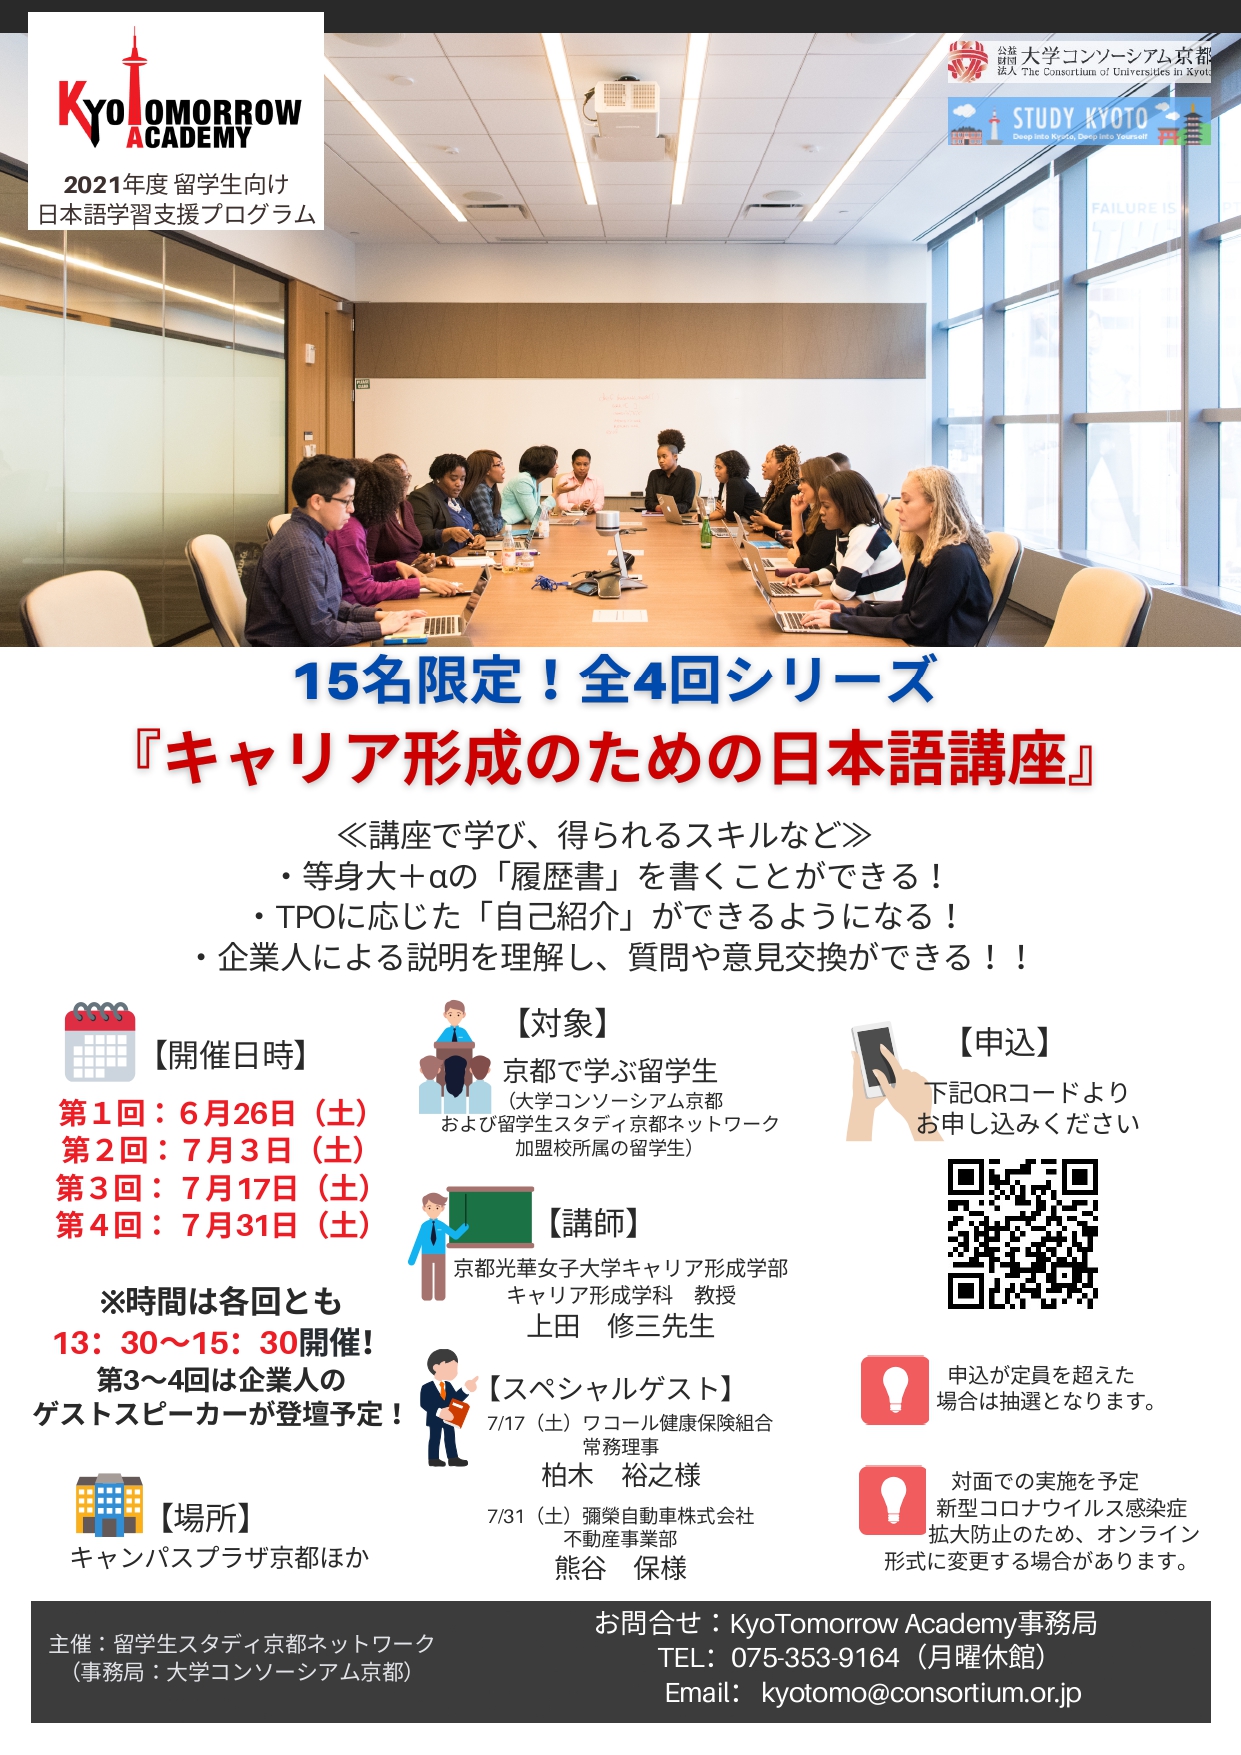 6 26 土 開催 15名限定 キャリア形成のための日本語講座 留学生就職情報 ポータルサイト